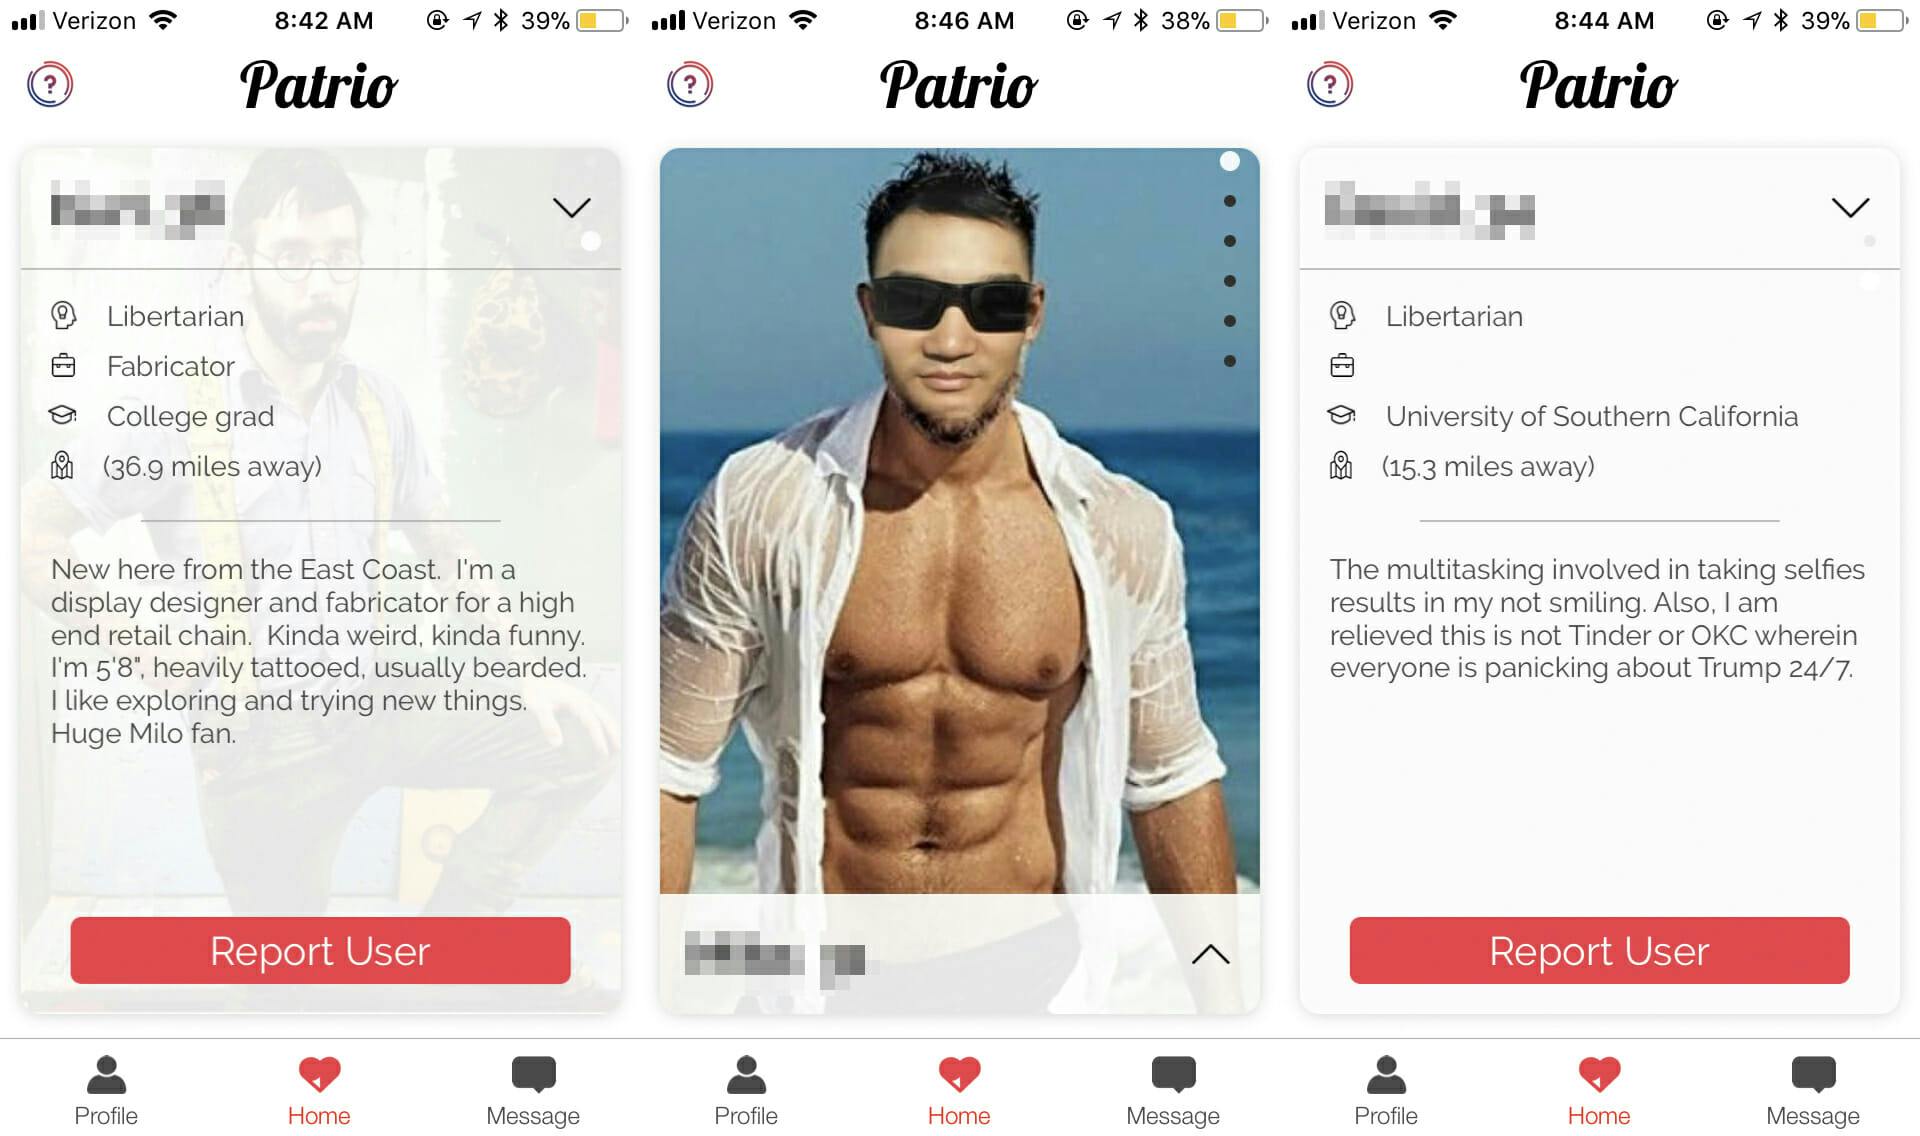 Patrio dating app profiles